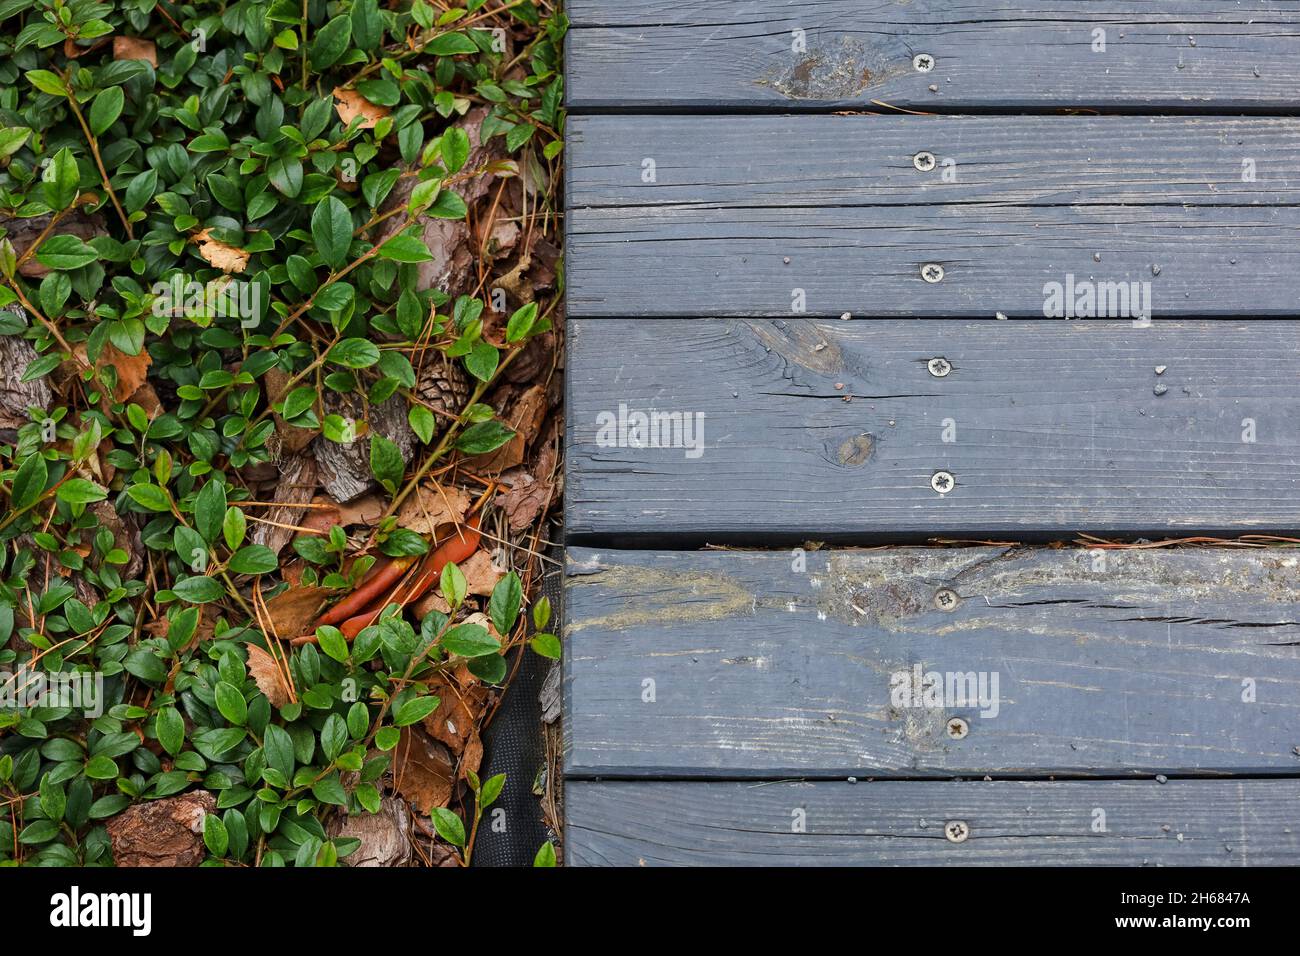 Pavimento in legno vicino alle foglie verdi, aghi di pino, pietre. Foto di alta qualità Foto Stock